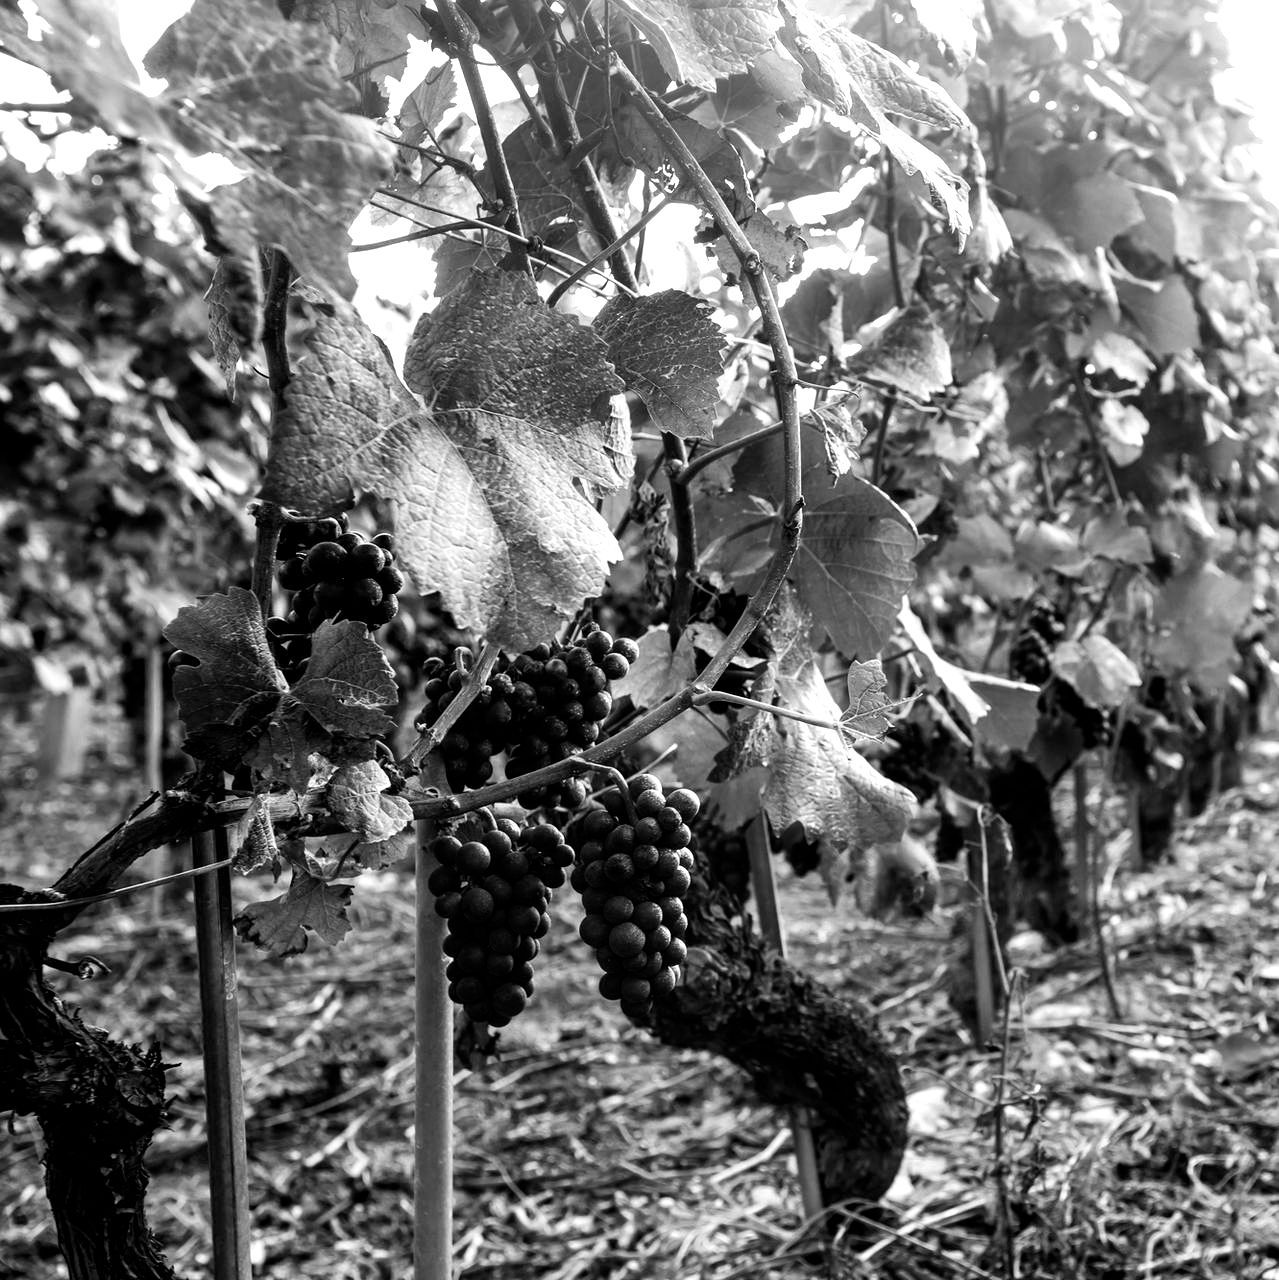 Ein Schwarzweissfoto von Trauben, die an einem Weinstock wachsen